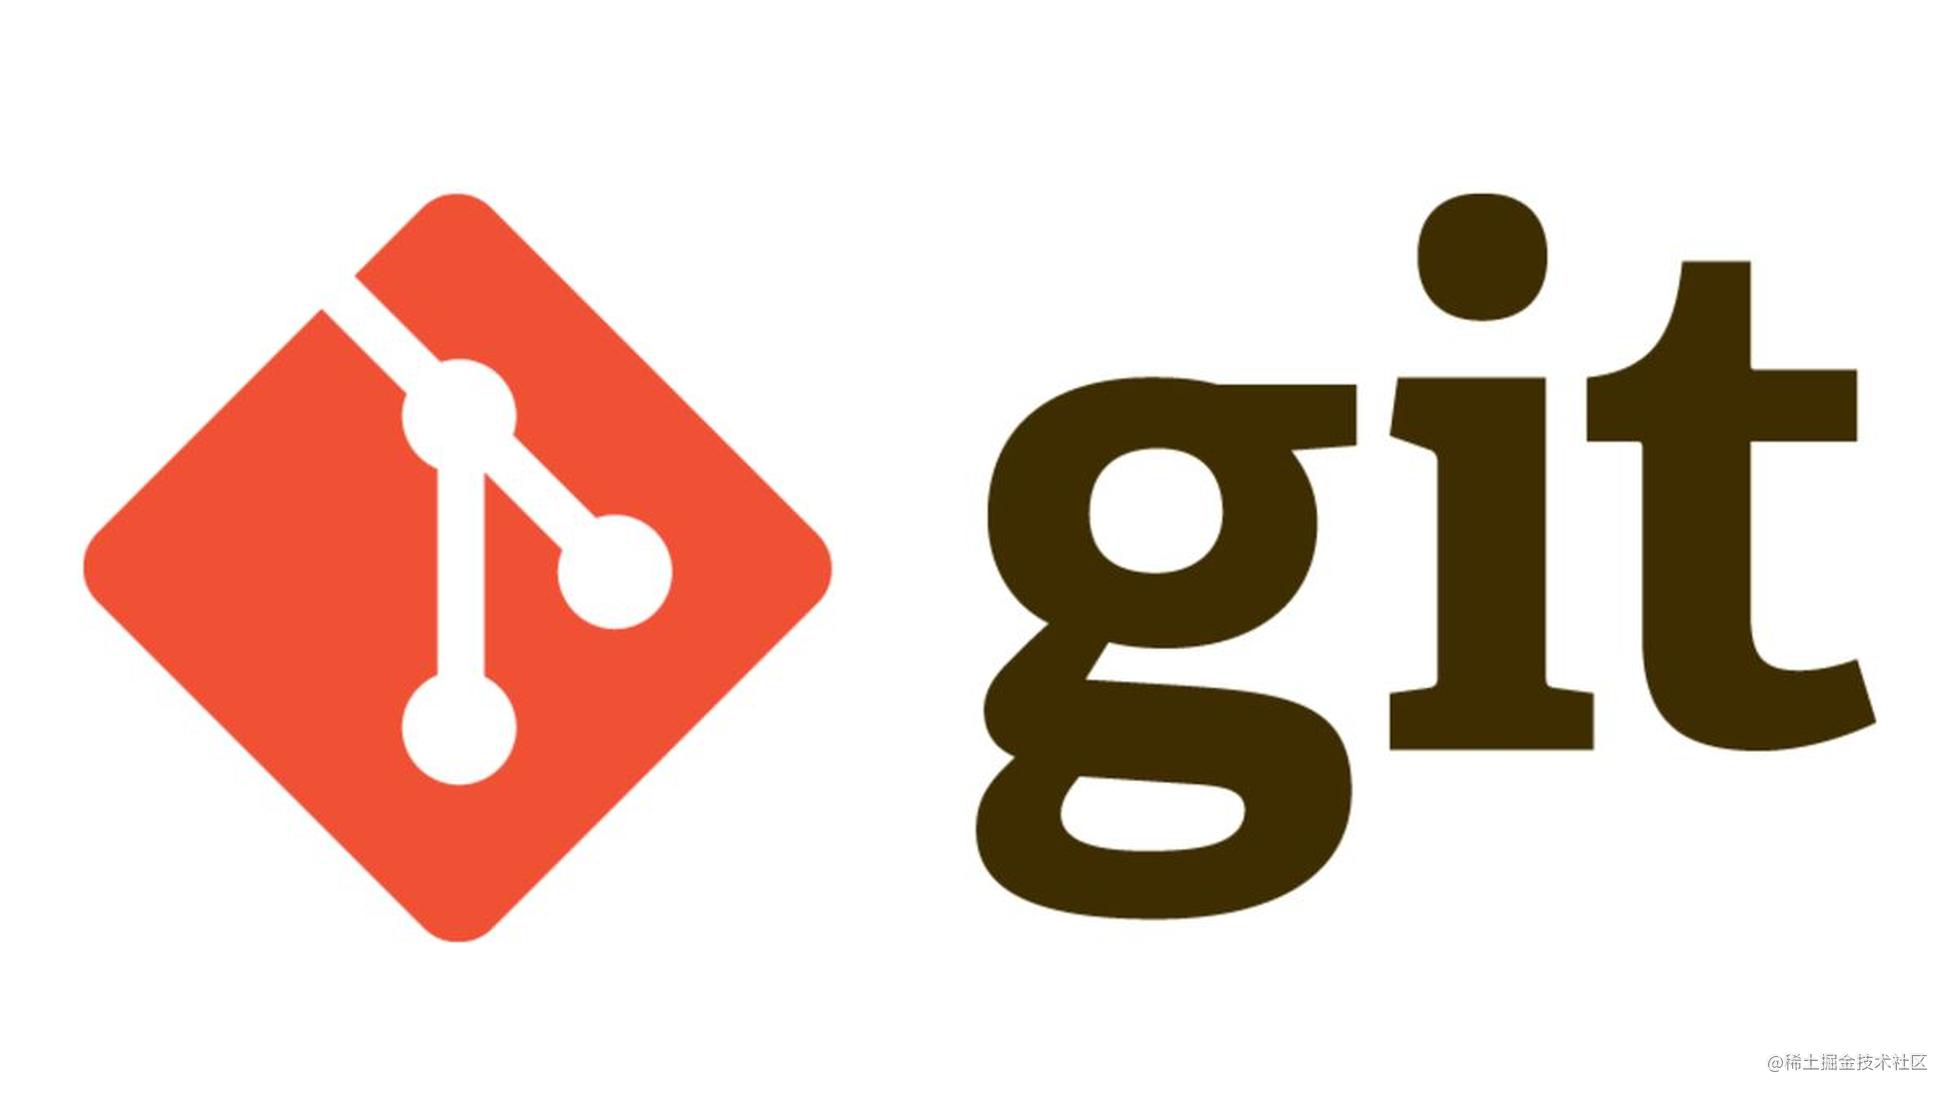 版本控制——Git